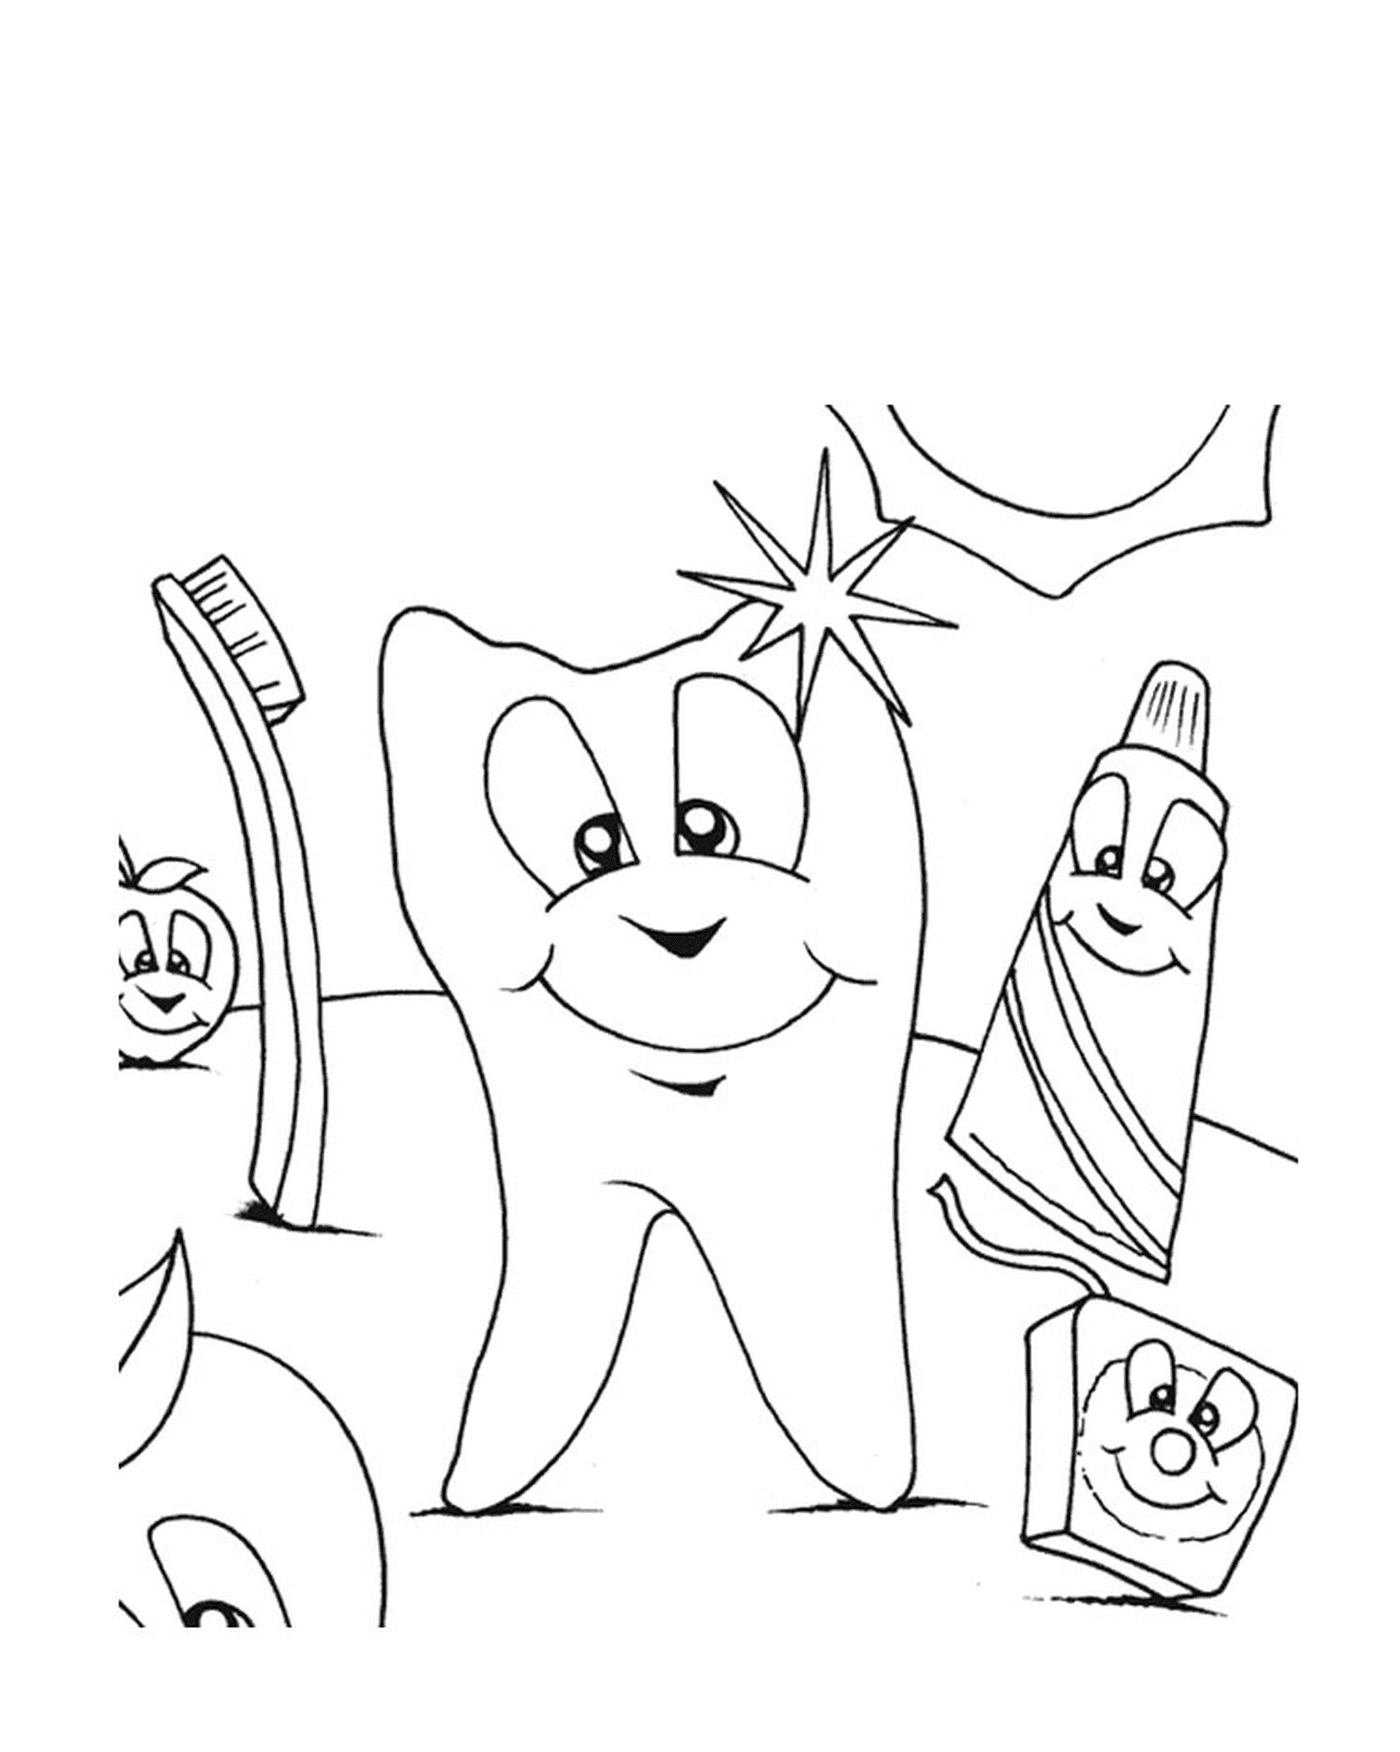   Une dent propre avec brosse à dents et dentifrice pour enfants 